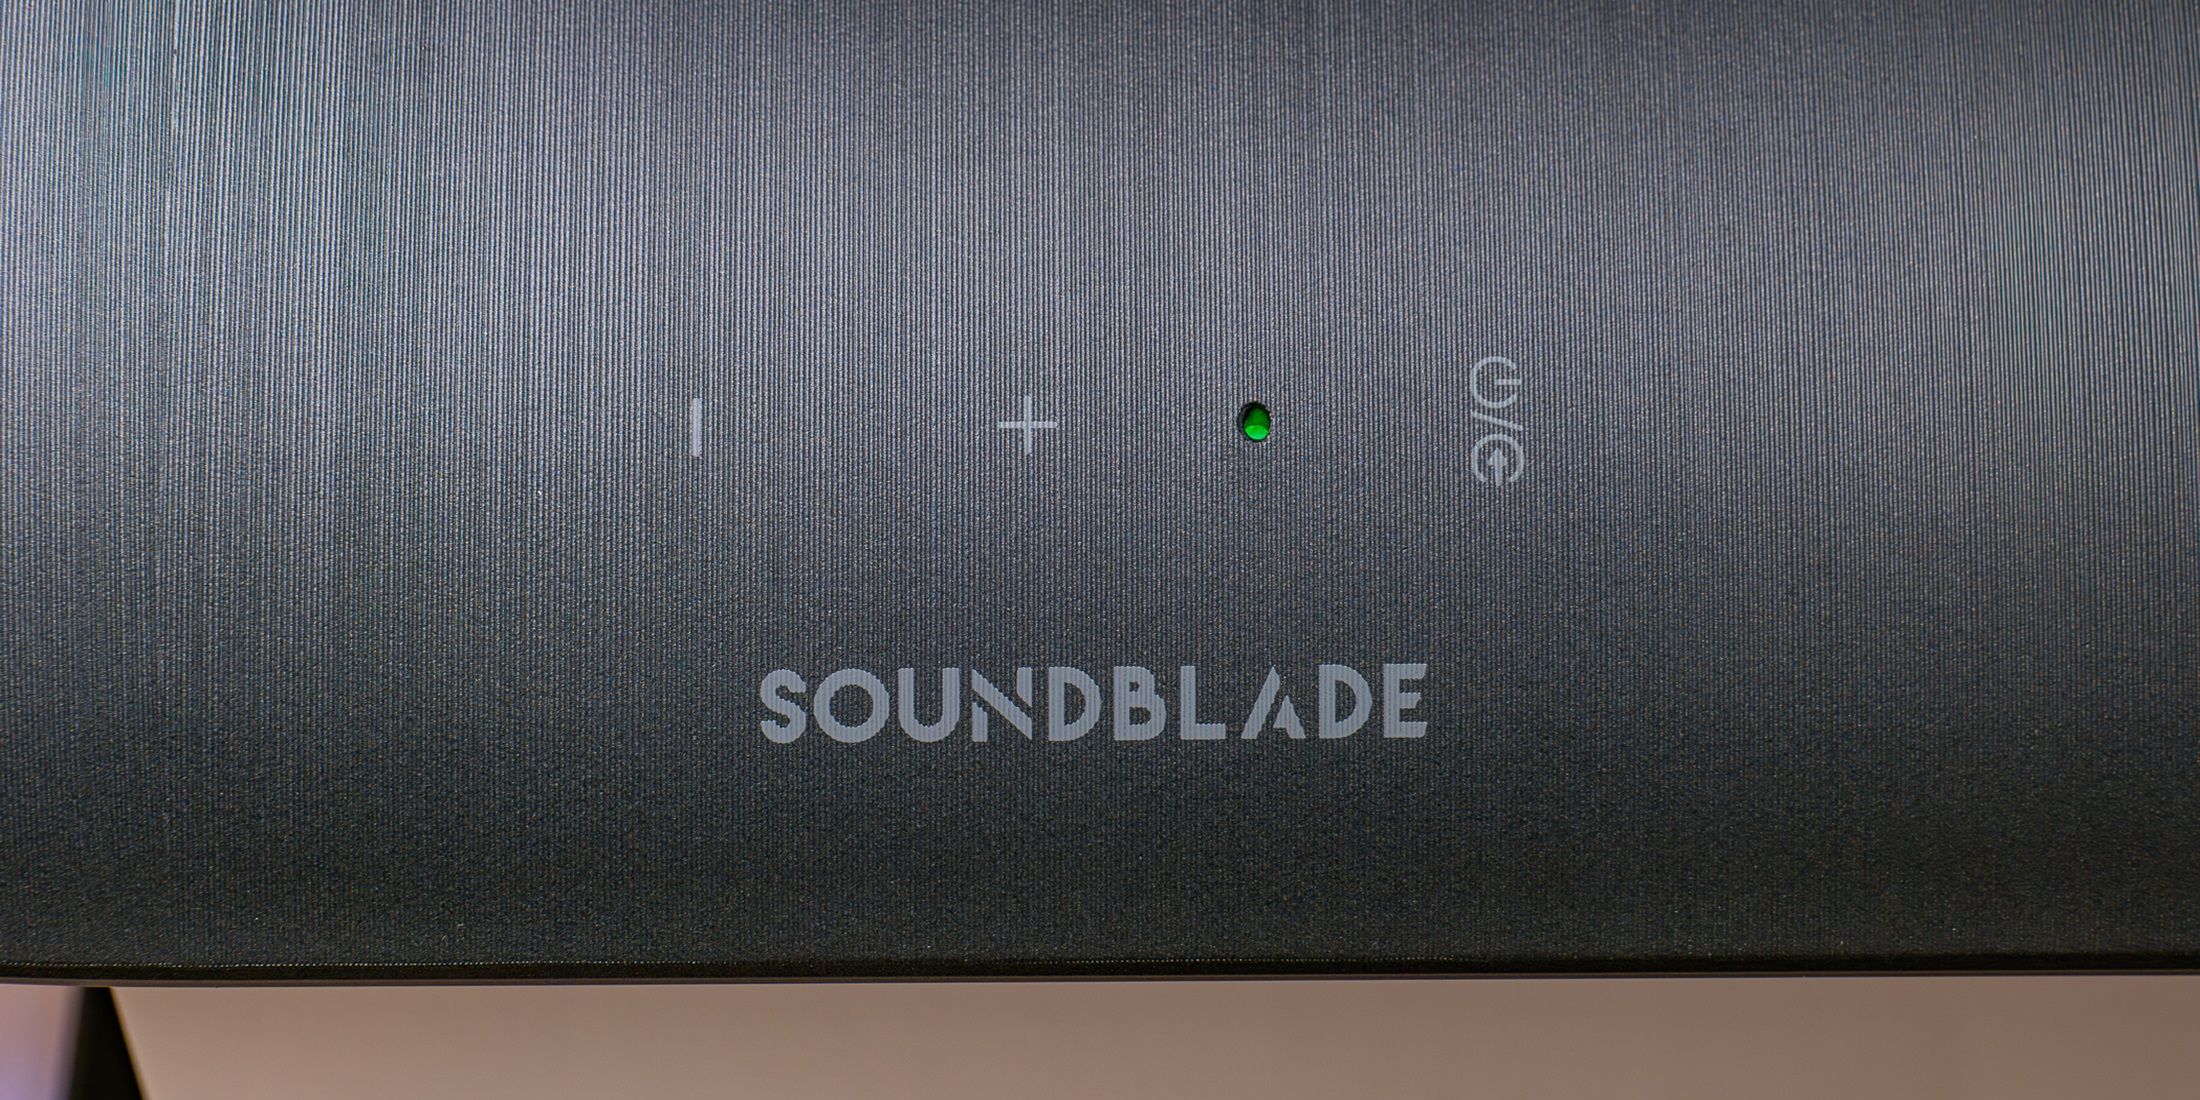 Soundblade Usage